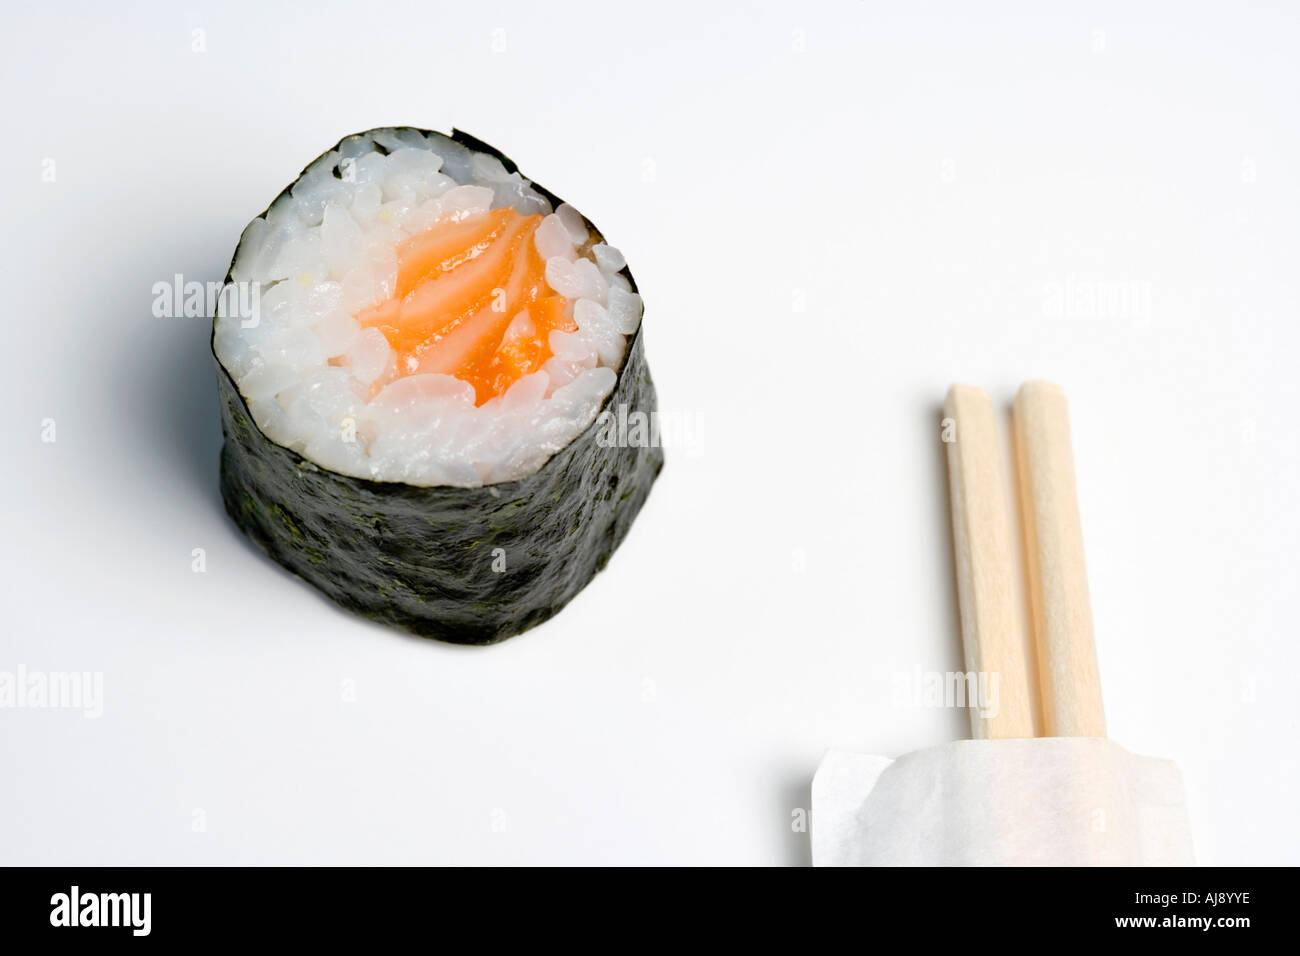 Wooden chopsticks next to salmon sushi piece Stock Photo